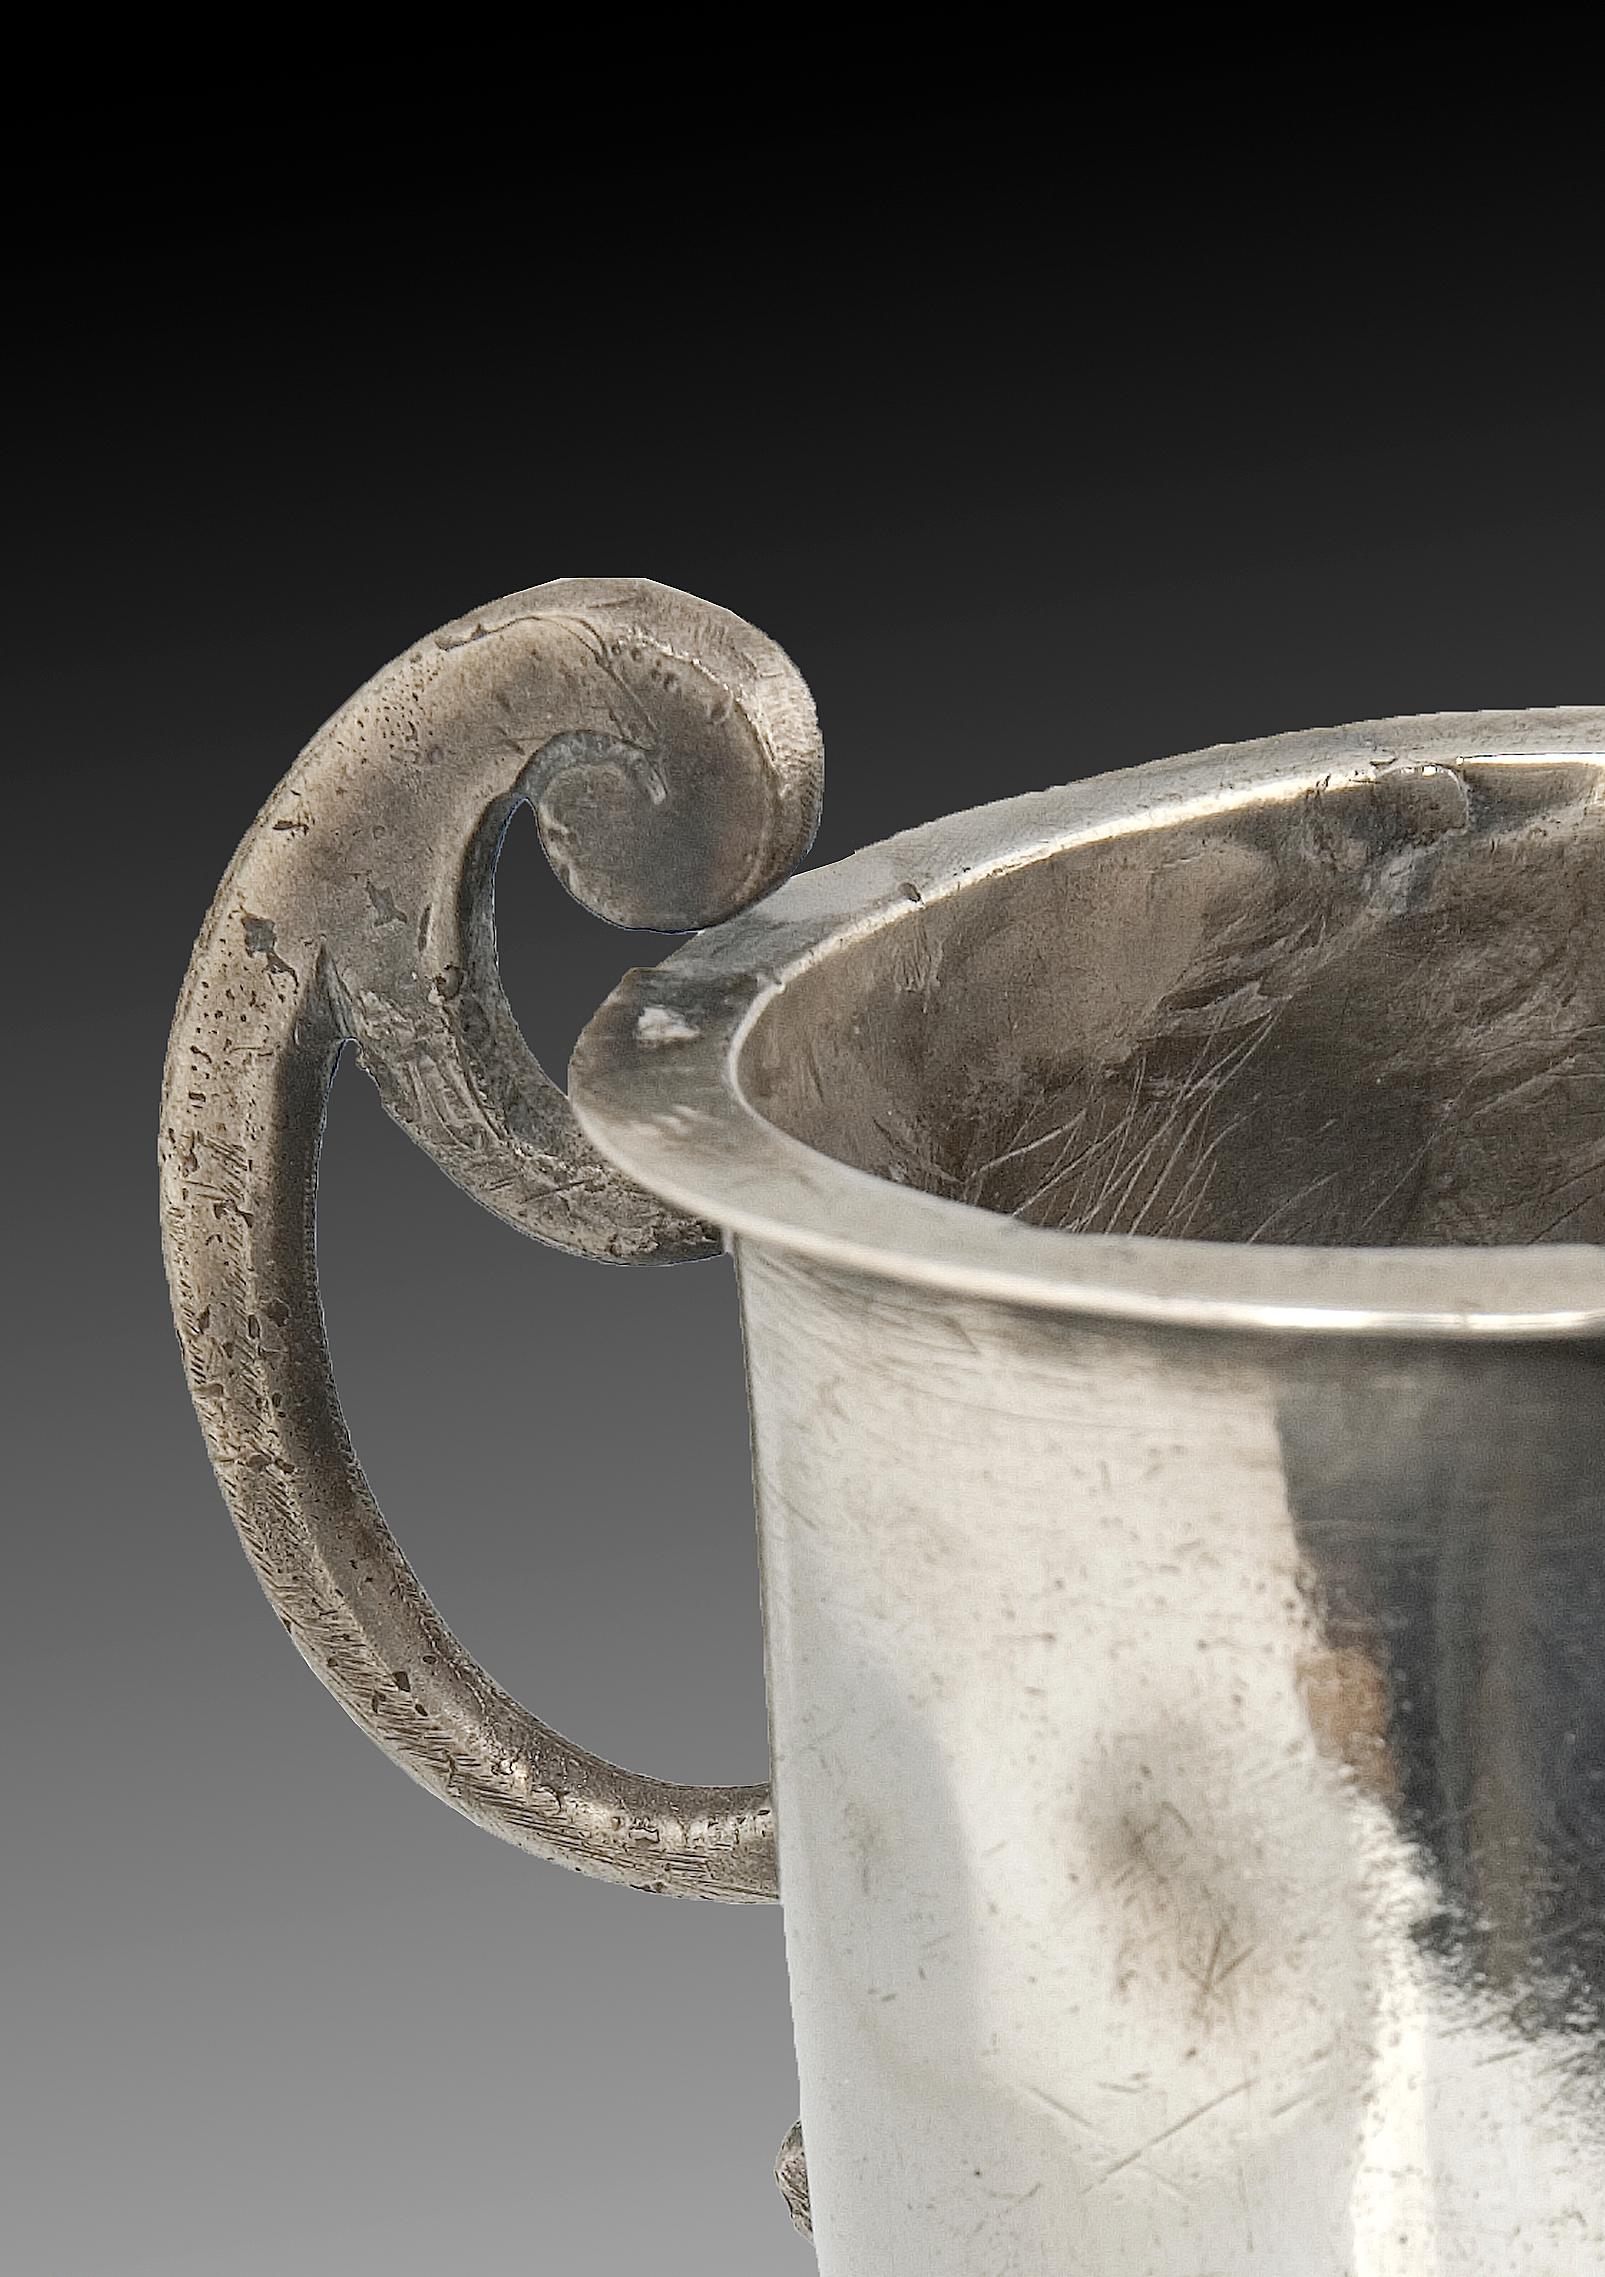 Silberne Schnabelkanne, 17. Jahrhundert.
Auf einem runden Fuß steht der glatte Schnabelkrug, mit dem Henkel in Form eines 